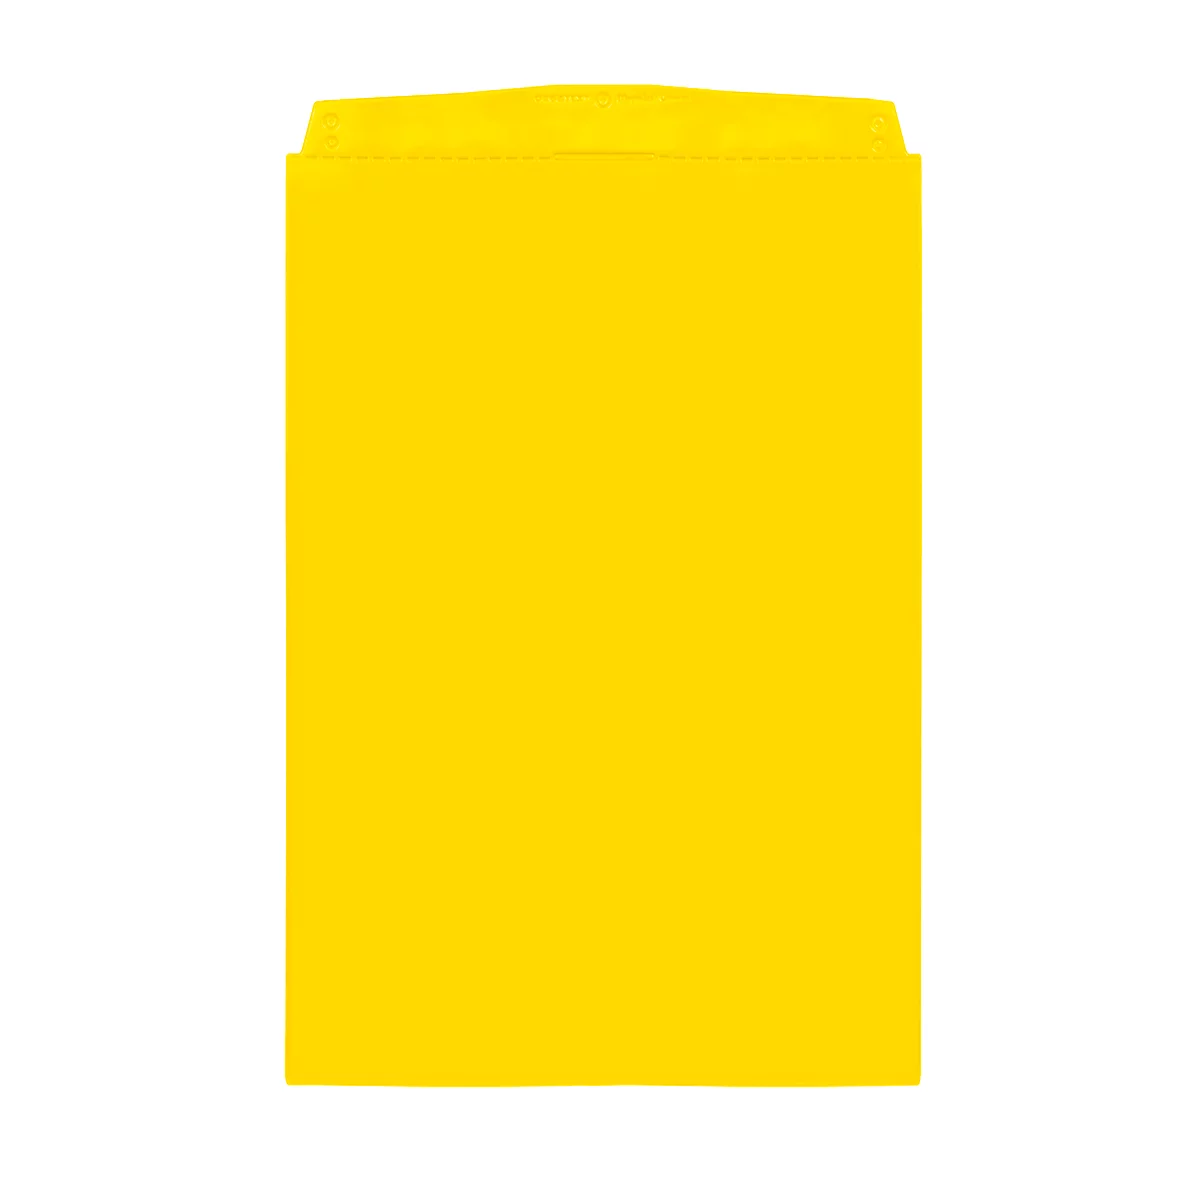 Orgatex Sichttaschen, A5 hoch, gelb, 10 St.